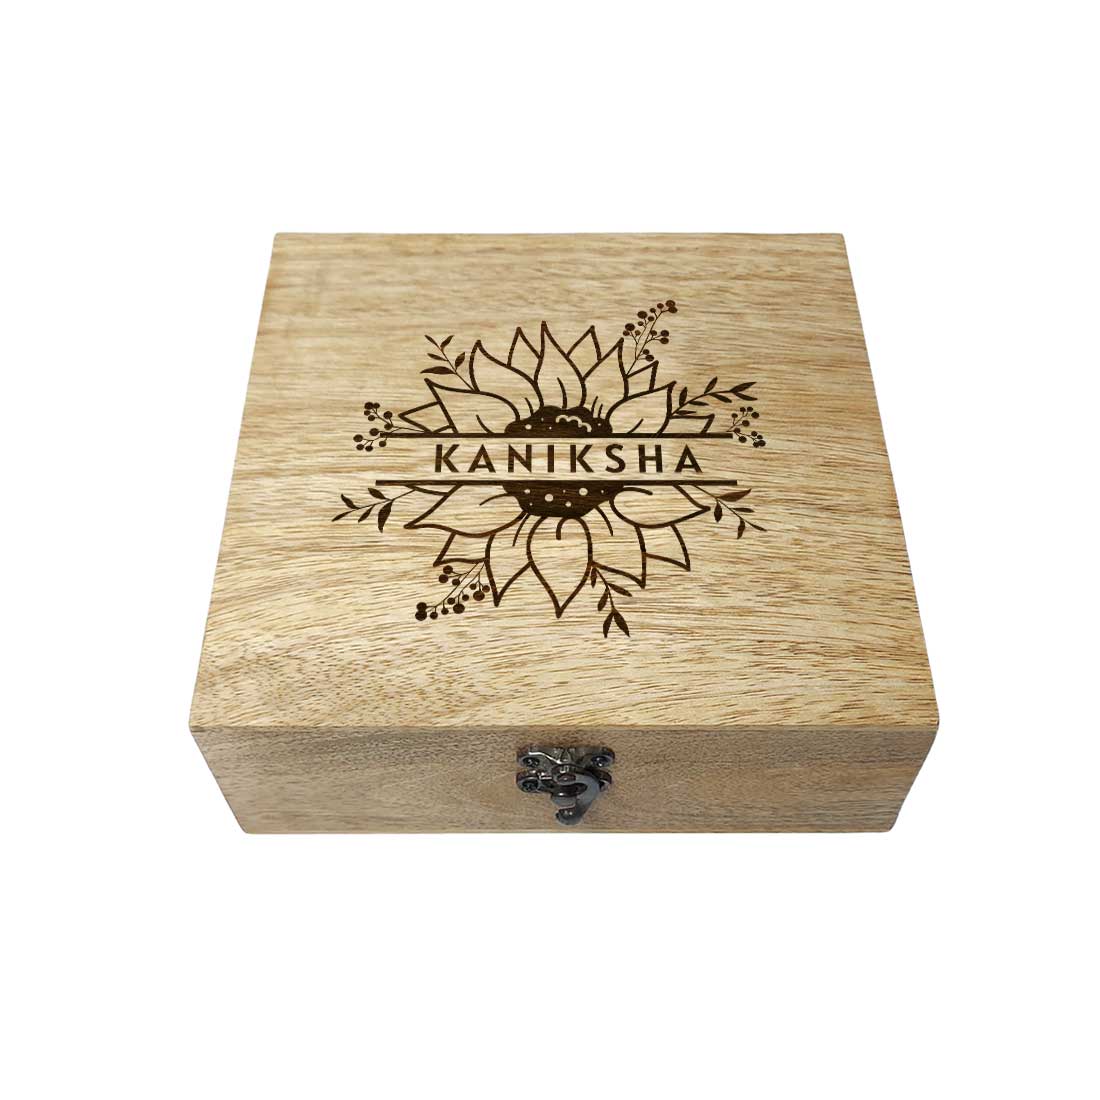 Custom Engraved Wooden Gift Box Jewellery Storage for Women - Flower Design